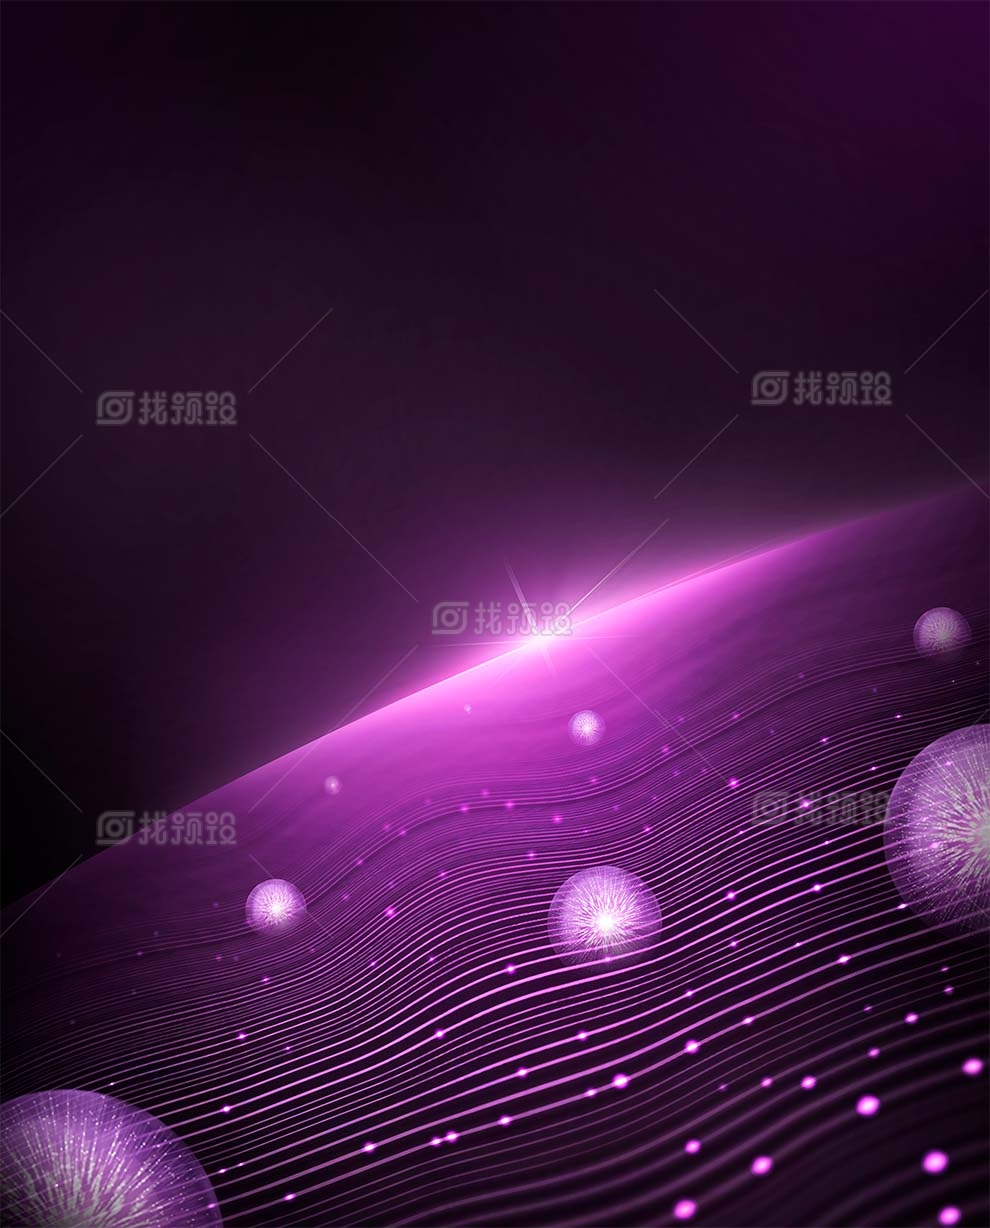 找预设网紫色分子细胞结构背景psd素材下载2023年3月28日 1673881025 c6e71325c097ad1d942283d2d45da58b